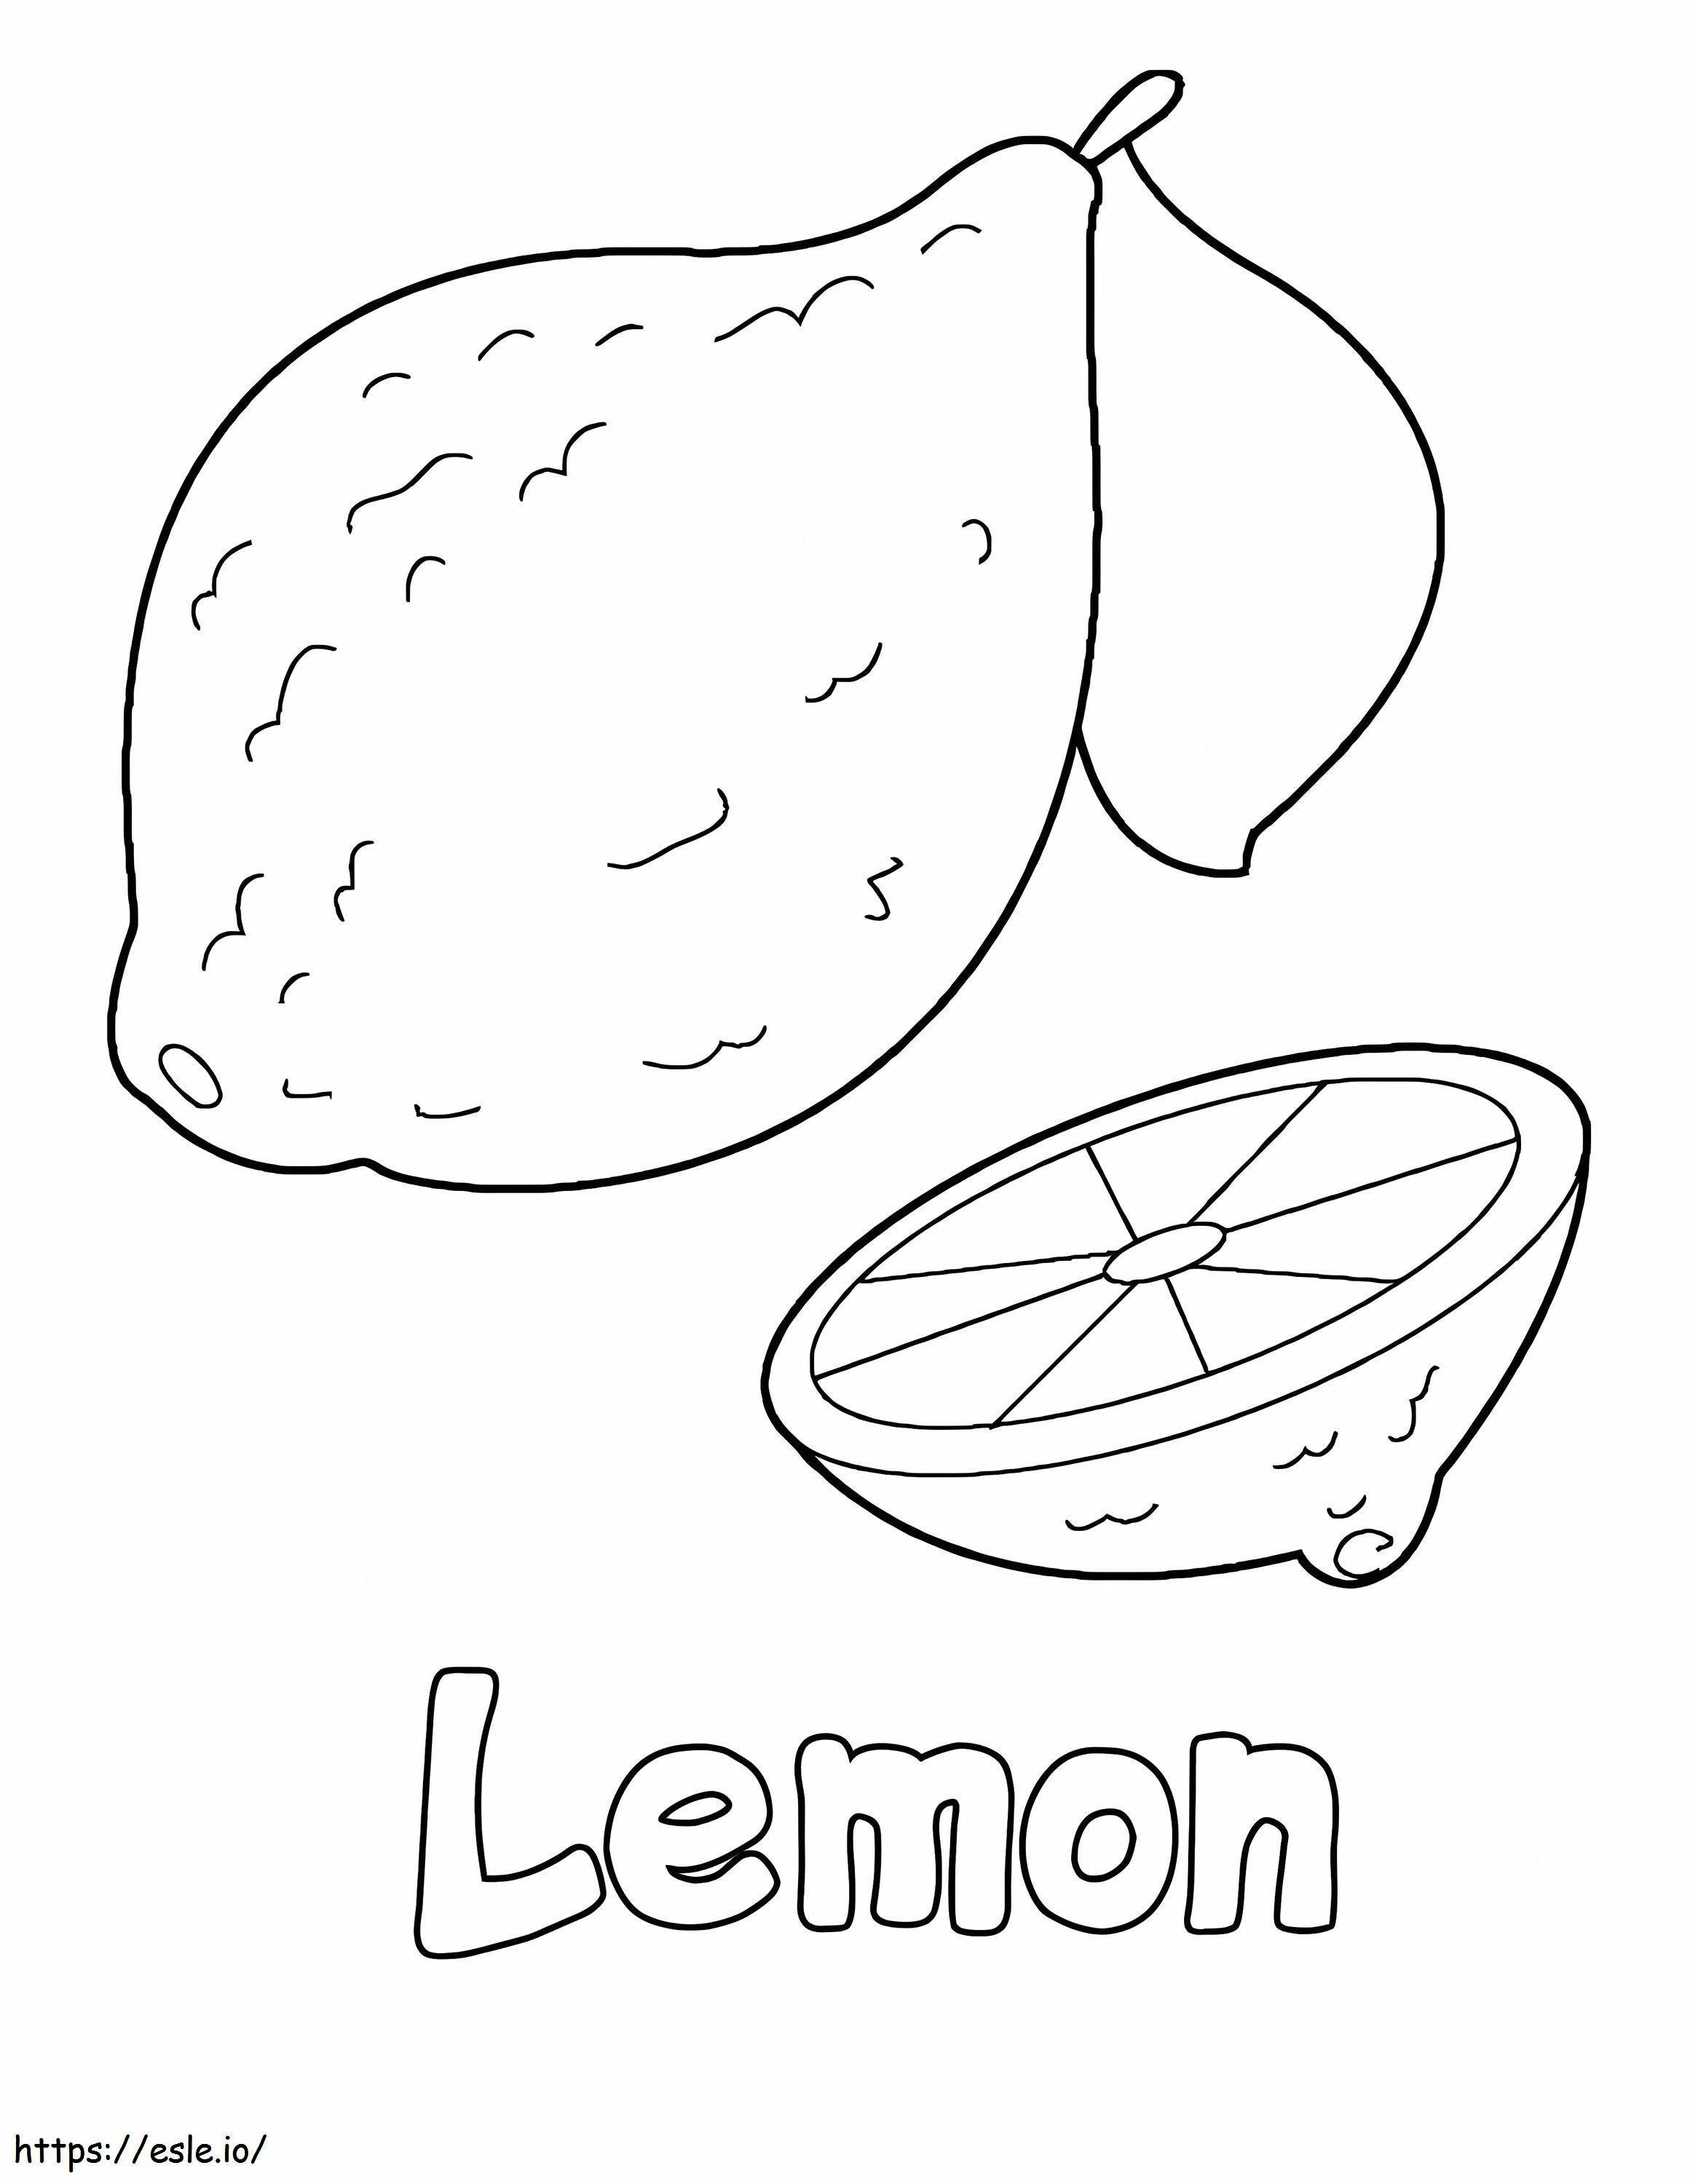 Temel Limon ve Yarım Limon boyama